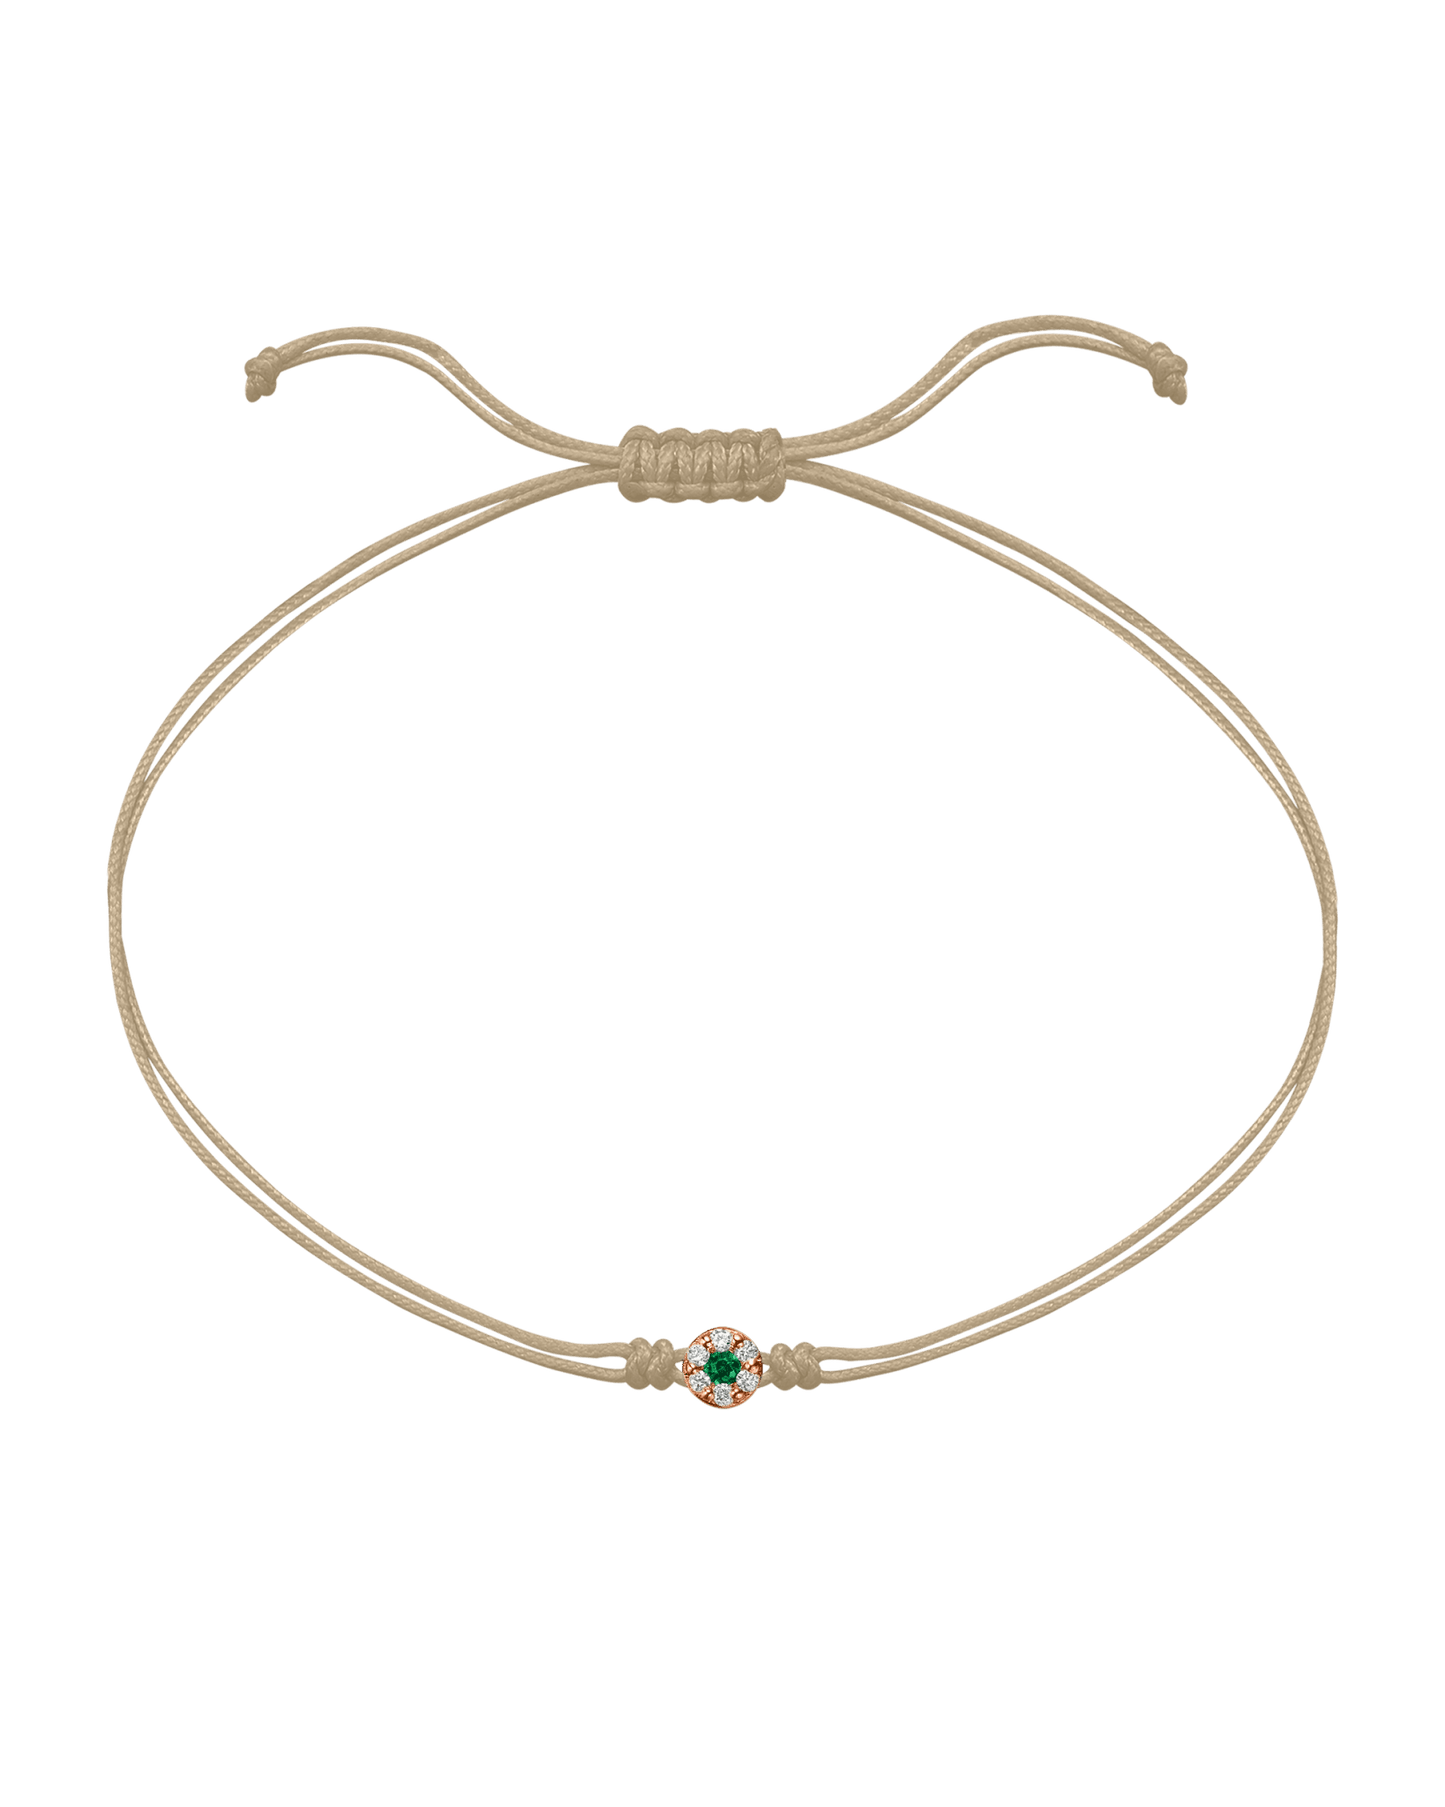 String of Love Diamond and Gemstone - 14K Rose Gold Bracelet 14K Solid Gold Beige Emerald 